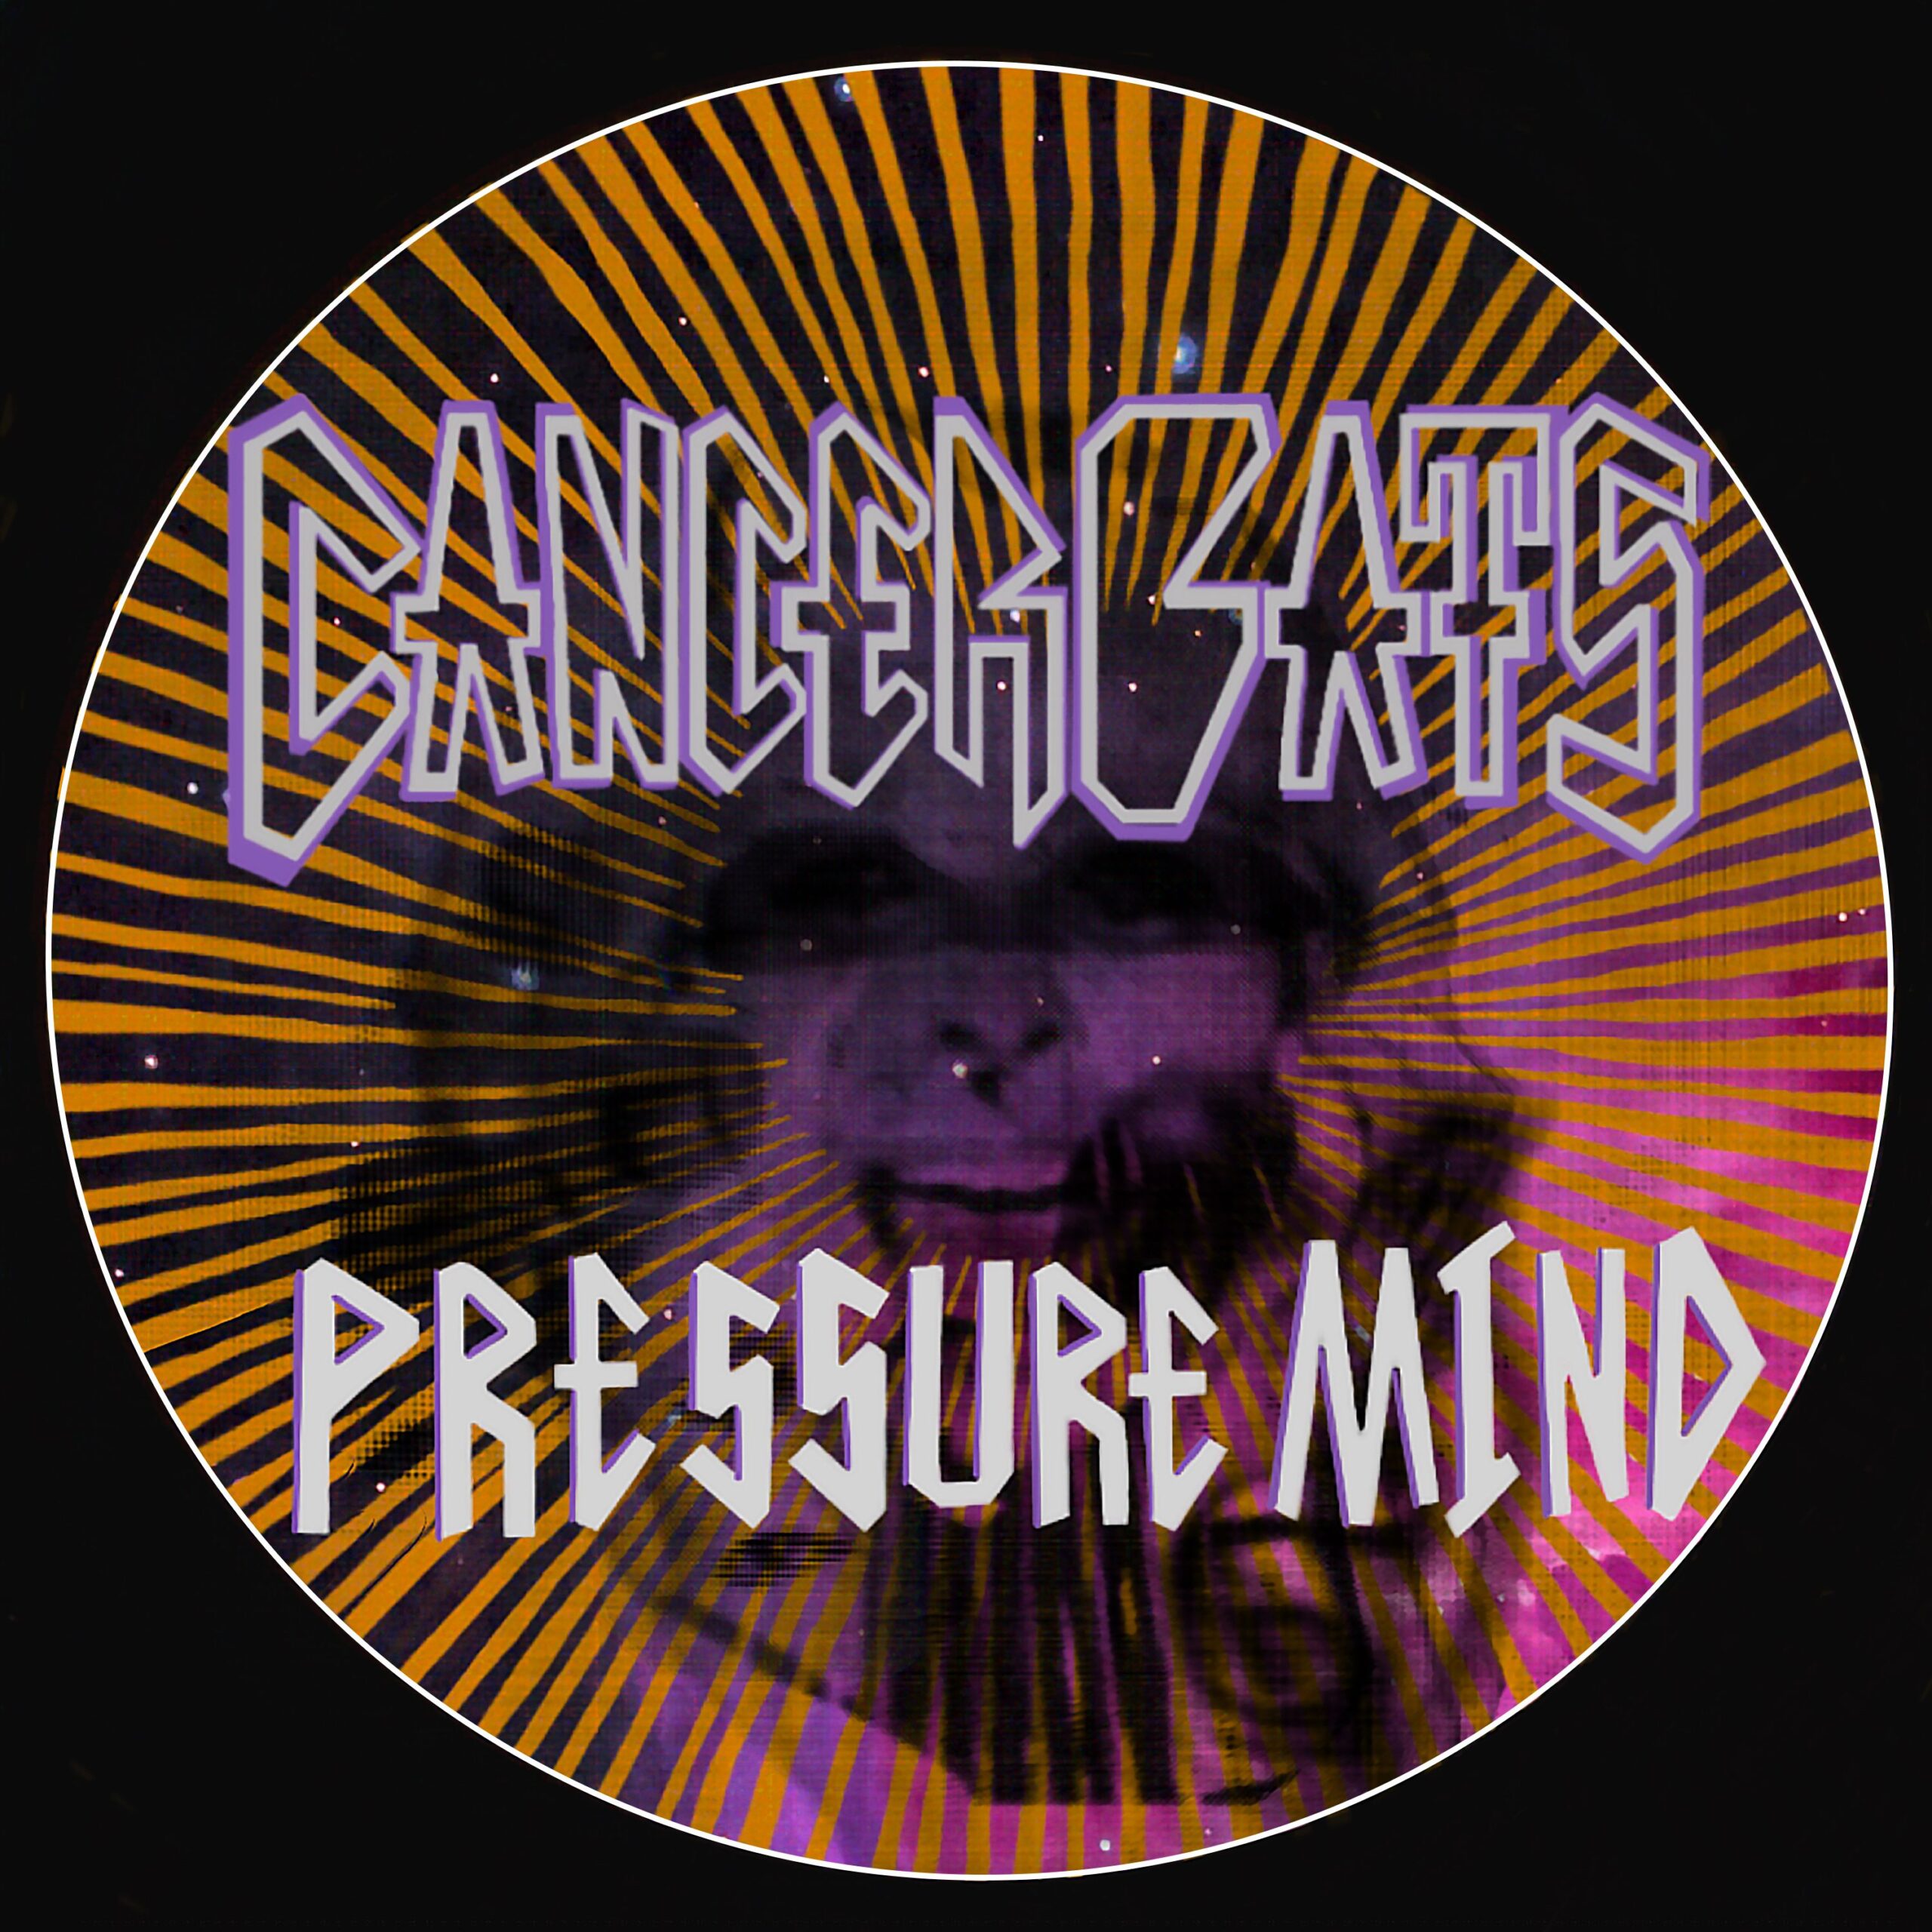 Cancer Bats_Pressure Mind